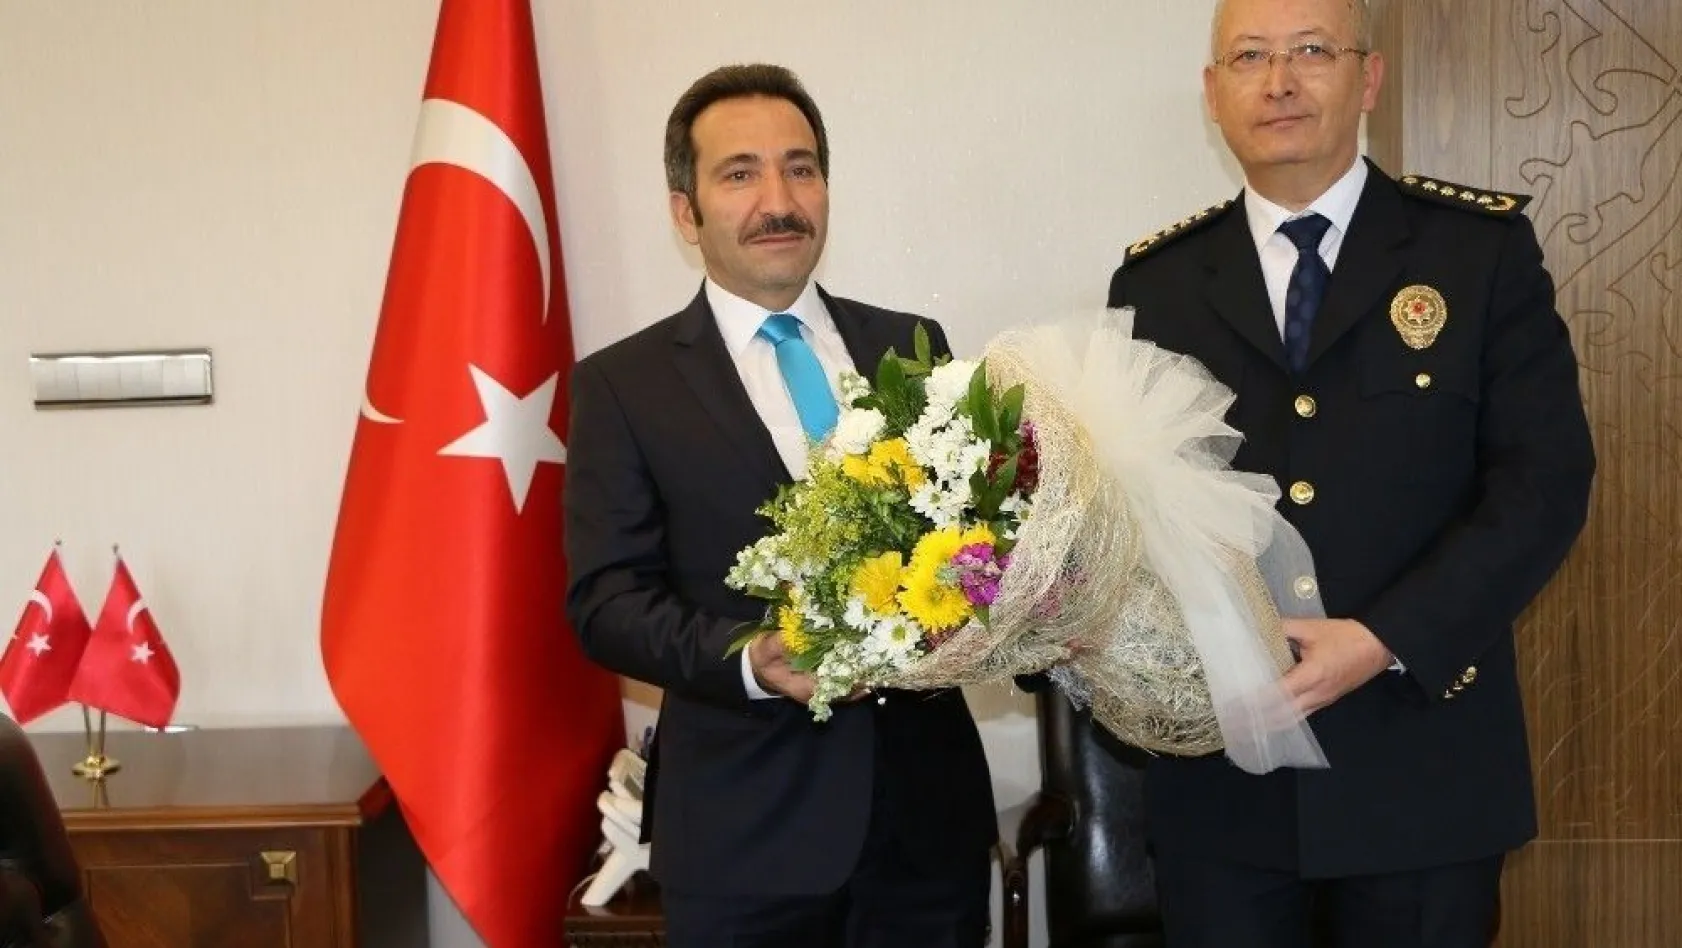 Bingöl'de Türk Polis Teşkilatının 173. Yıl Dönümü
